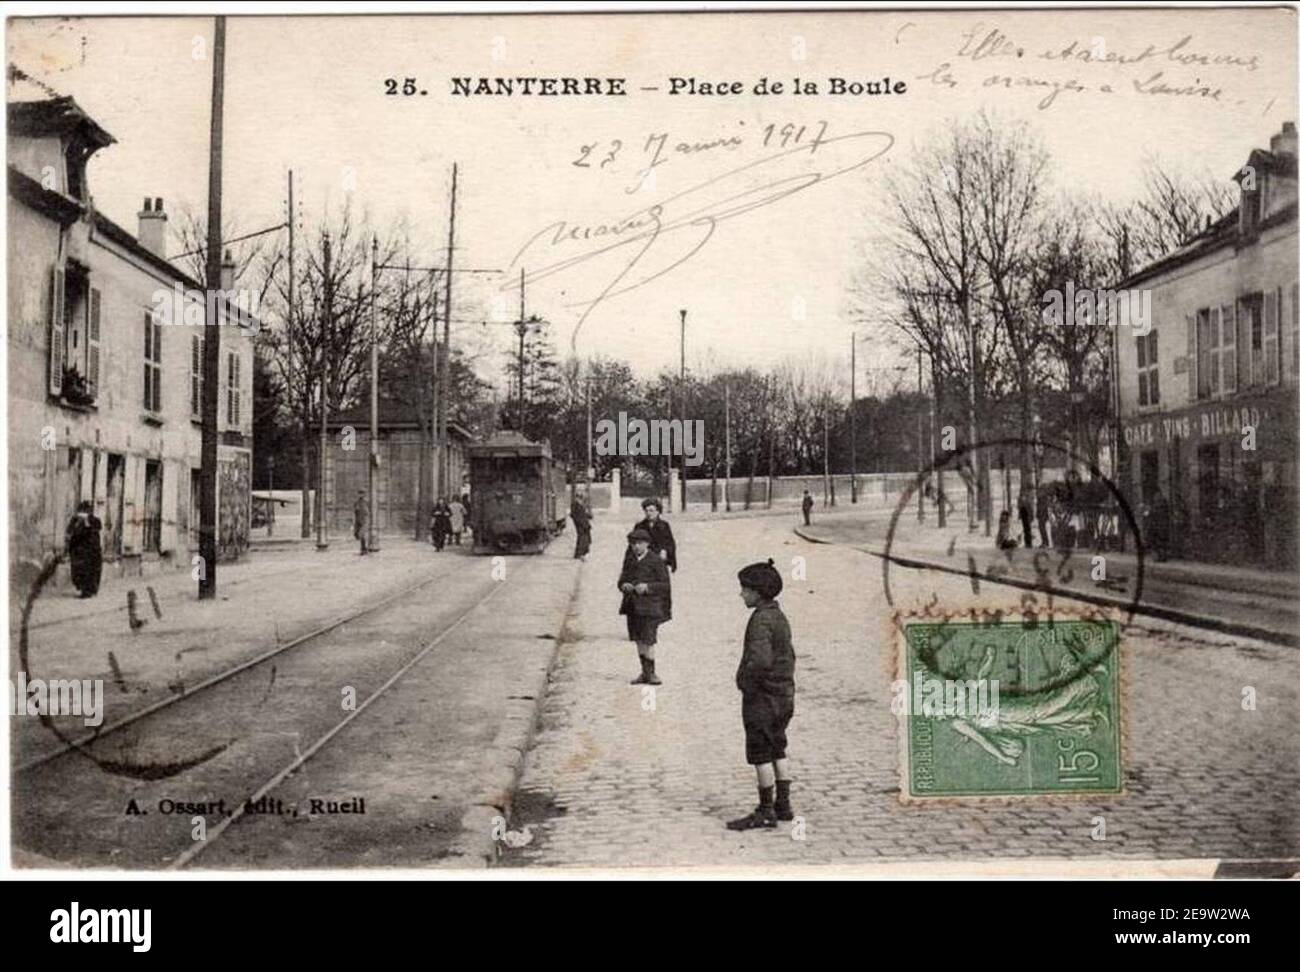 Nanterre.Place de la Boule.Tramway Stock Photo - Alamy